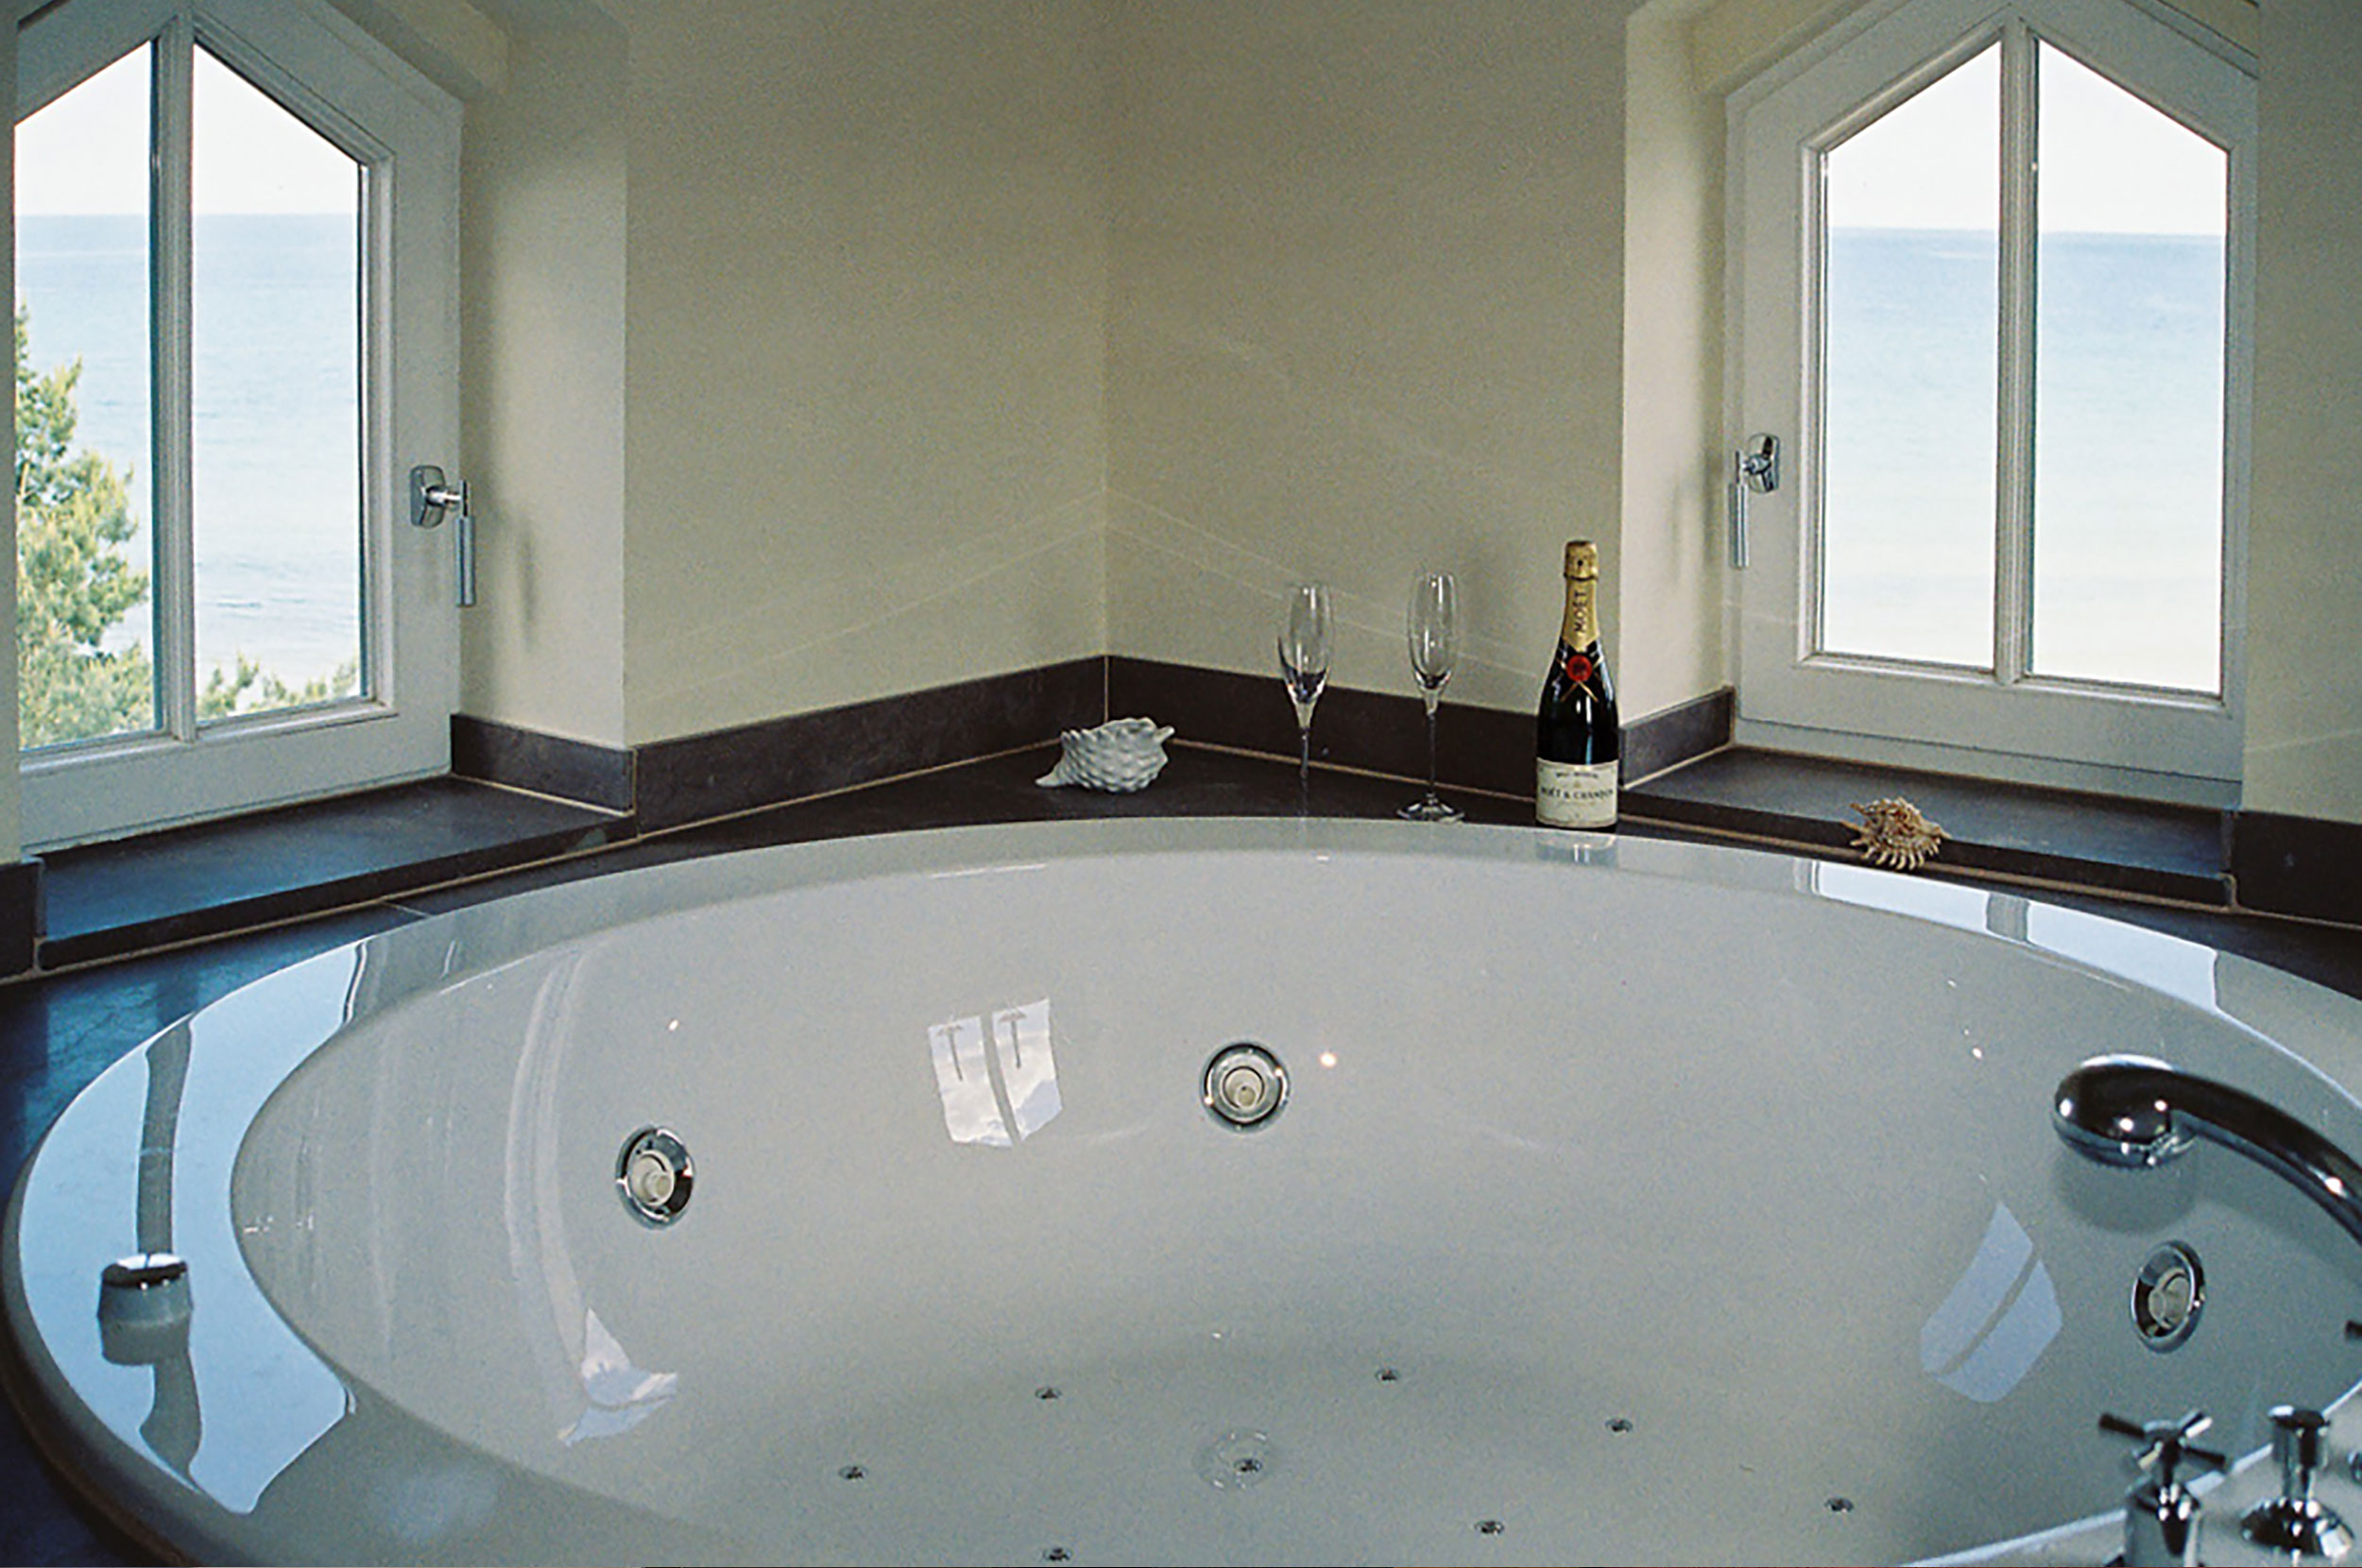 Sterne Luxus Penthouse - Villa Aegir in Binz direkt am Strand mit Meerblick und Wellness Oase